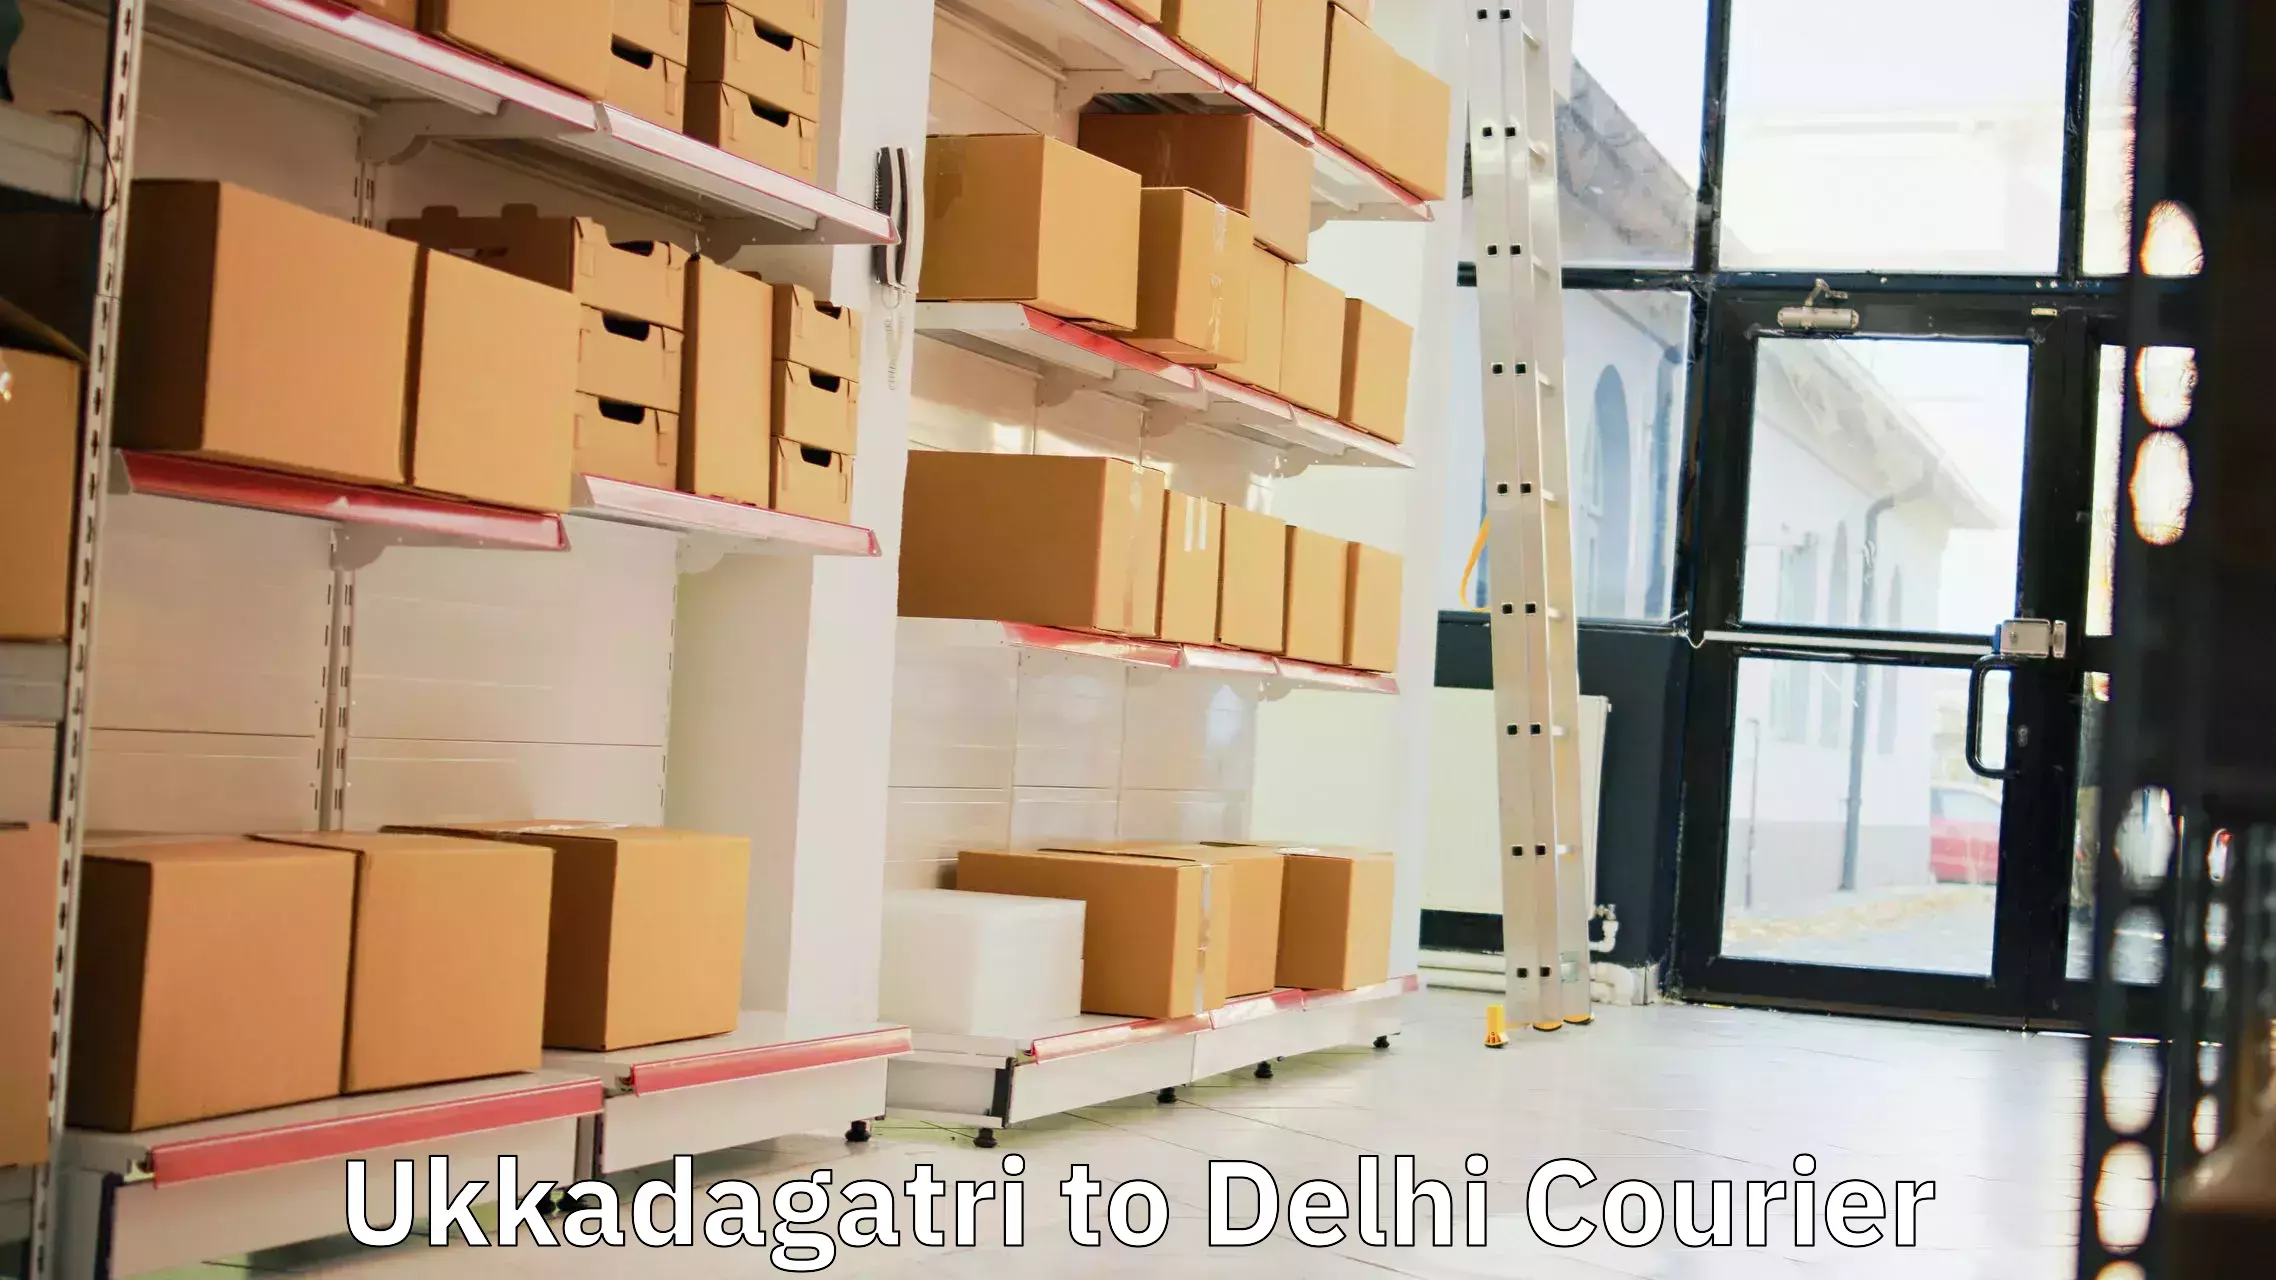 Cost-effective courier solutions Ukkadagatri to IIT Delhi